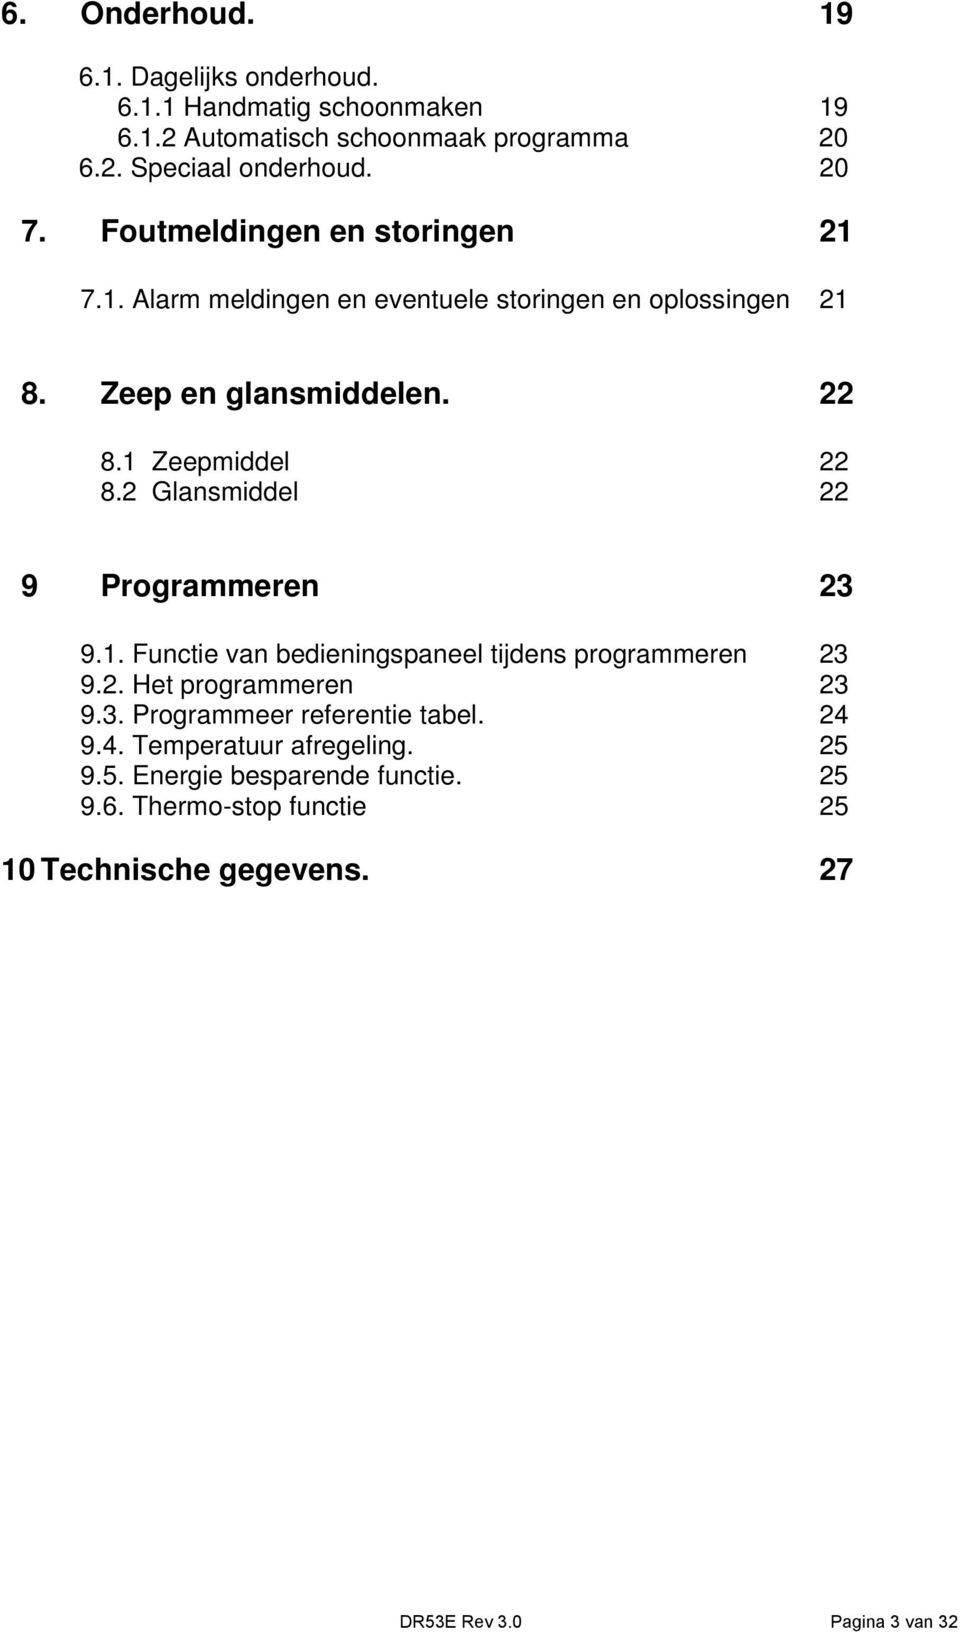 2 Glansmiddel 22 9 Programmeren 23 9.1. Functie van bedieningspaneel tijdens programmeren 23 9.2. Het programmeren 23 9.3. Programmeer referentie tabel.